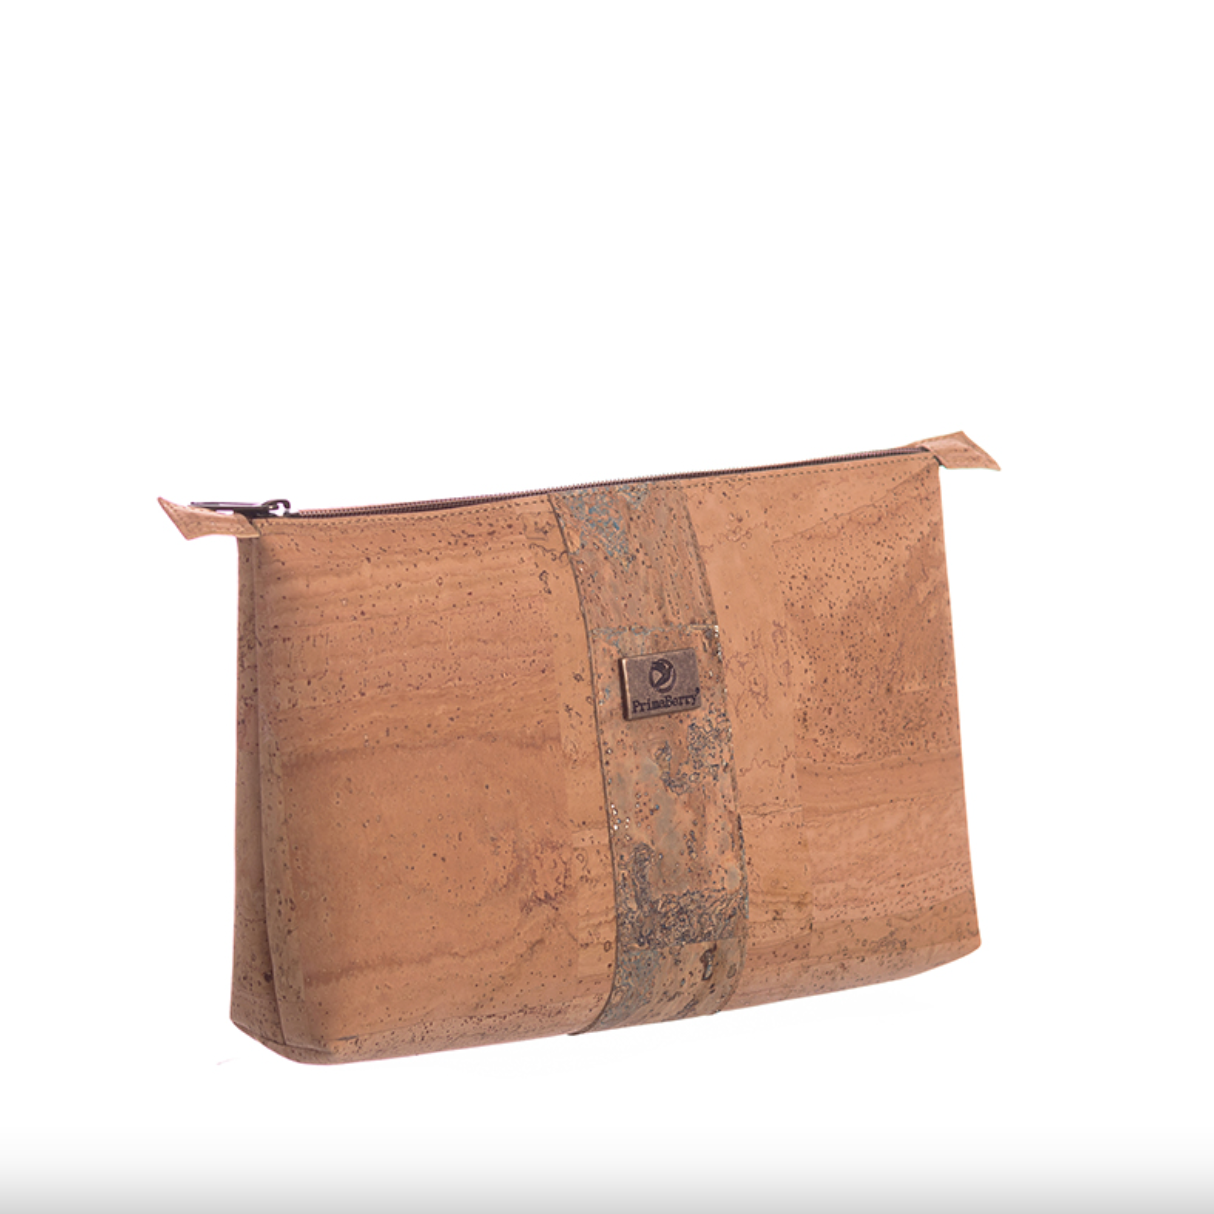 Große Karten-Kosmetiktasche: Stilvolle und funktionale Reisetasche mit Vintage-Kartendesign, hergestellt aus nachhaltigem Kork